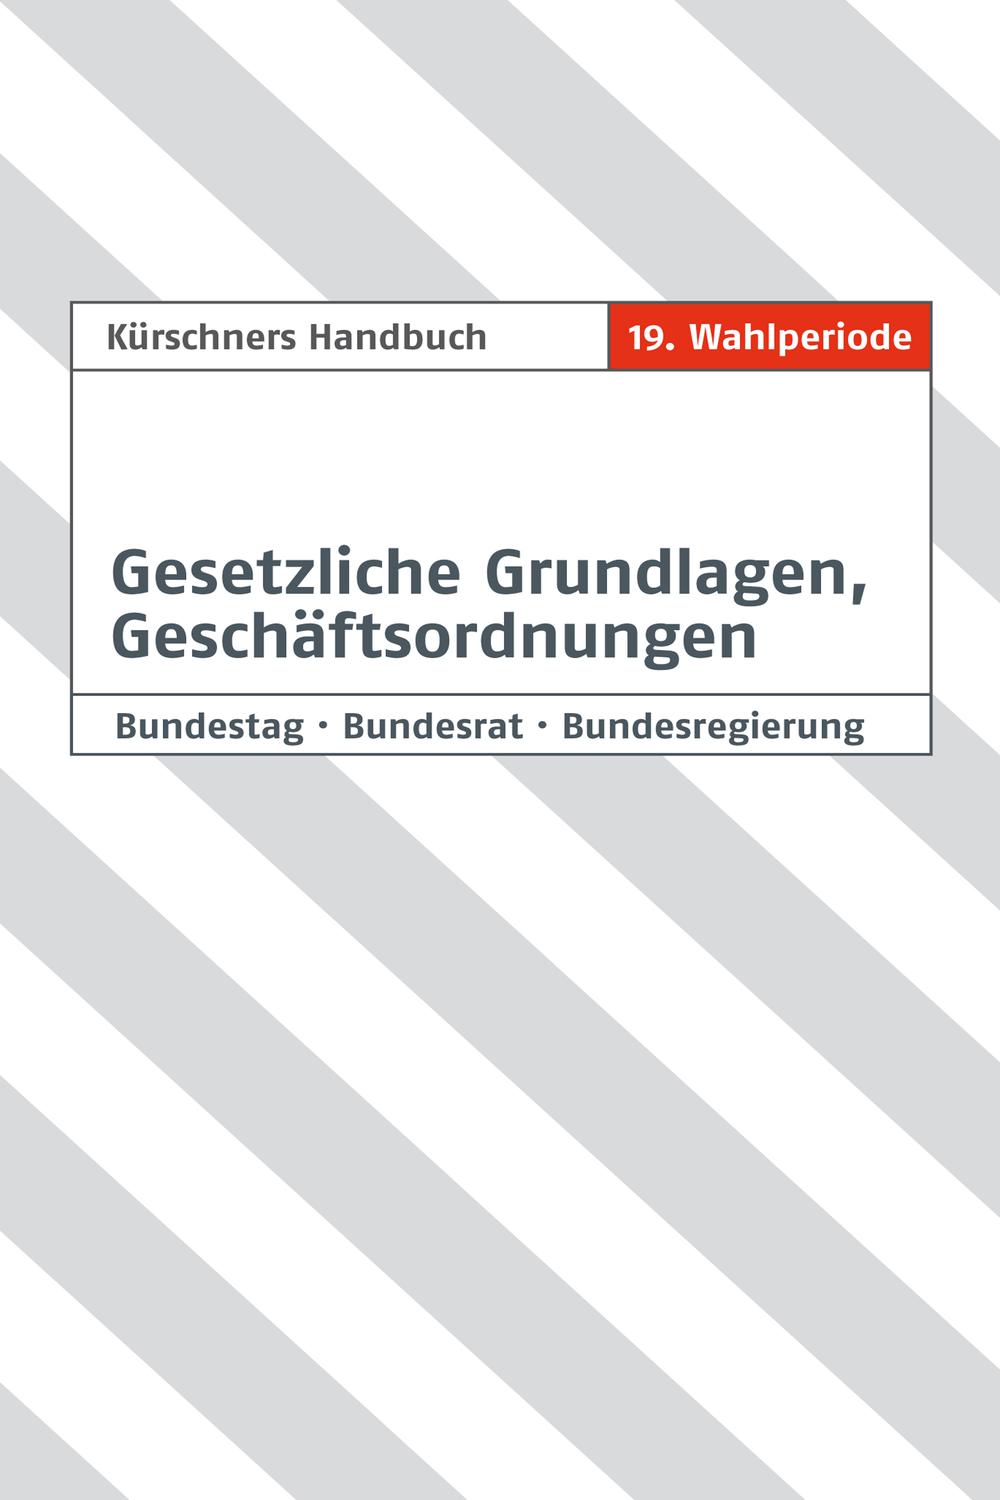 Kürschners Handbuch Gesetzliche Grundlagen, Geschäftsordnungen - Andreas Holzapfel